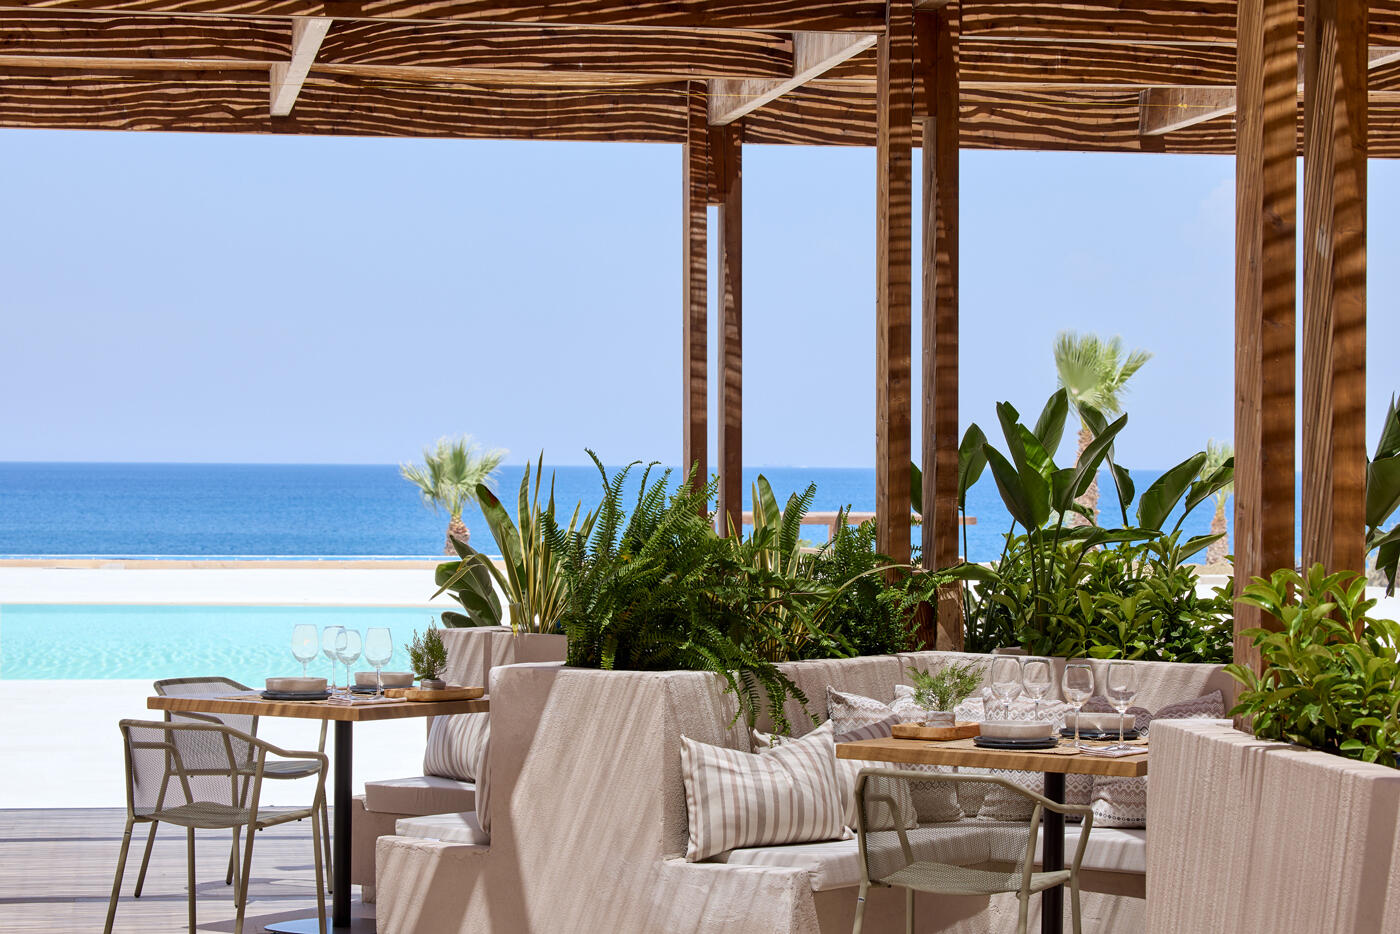 Mediterranes Restaurant mit Sonnendach und vielen Pflanzen direkt am Pool. Im Hintergrund sieht man das Meer.